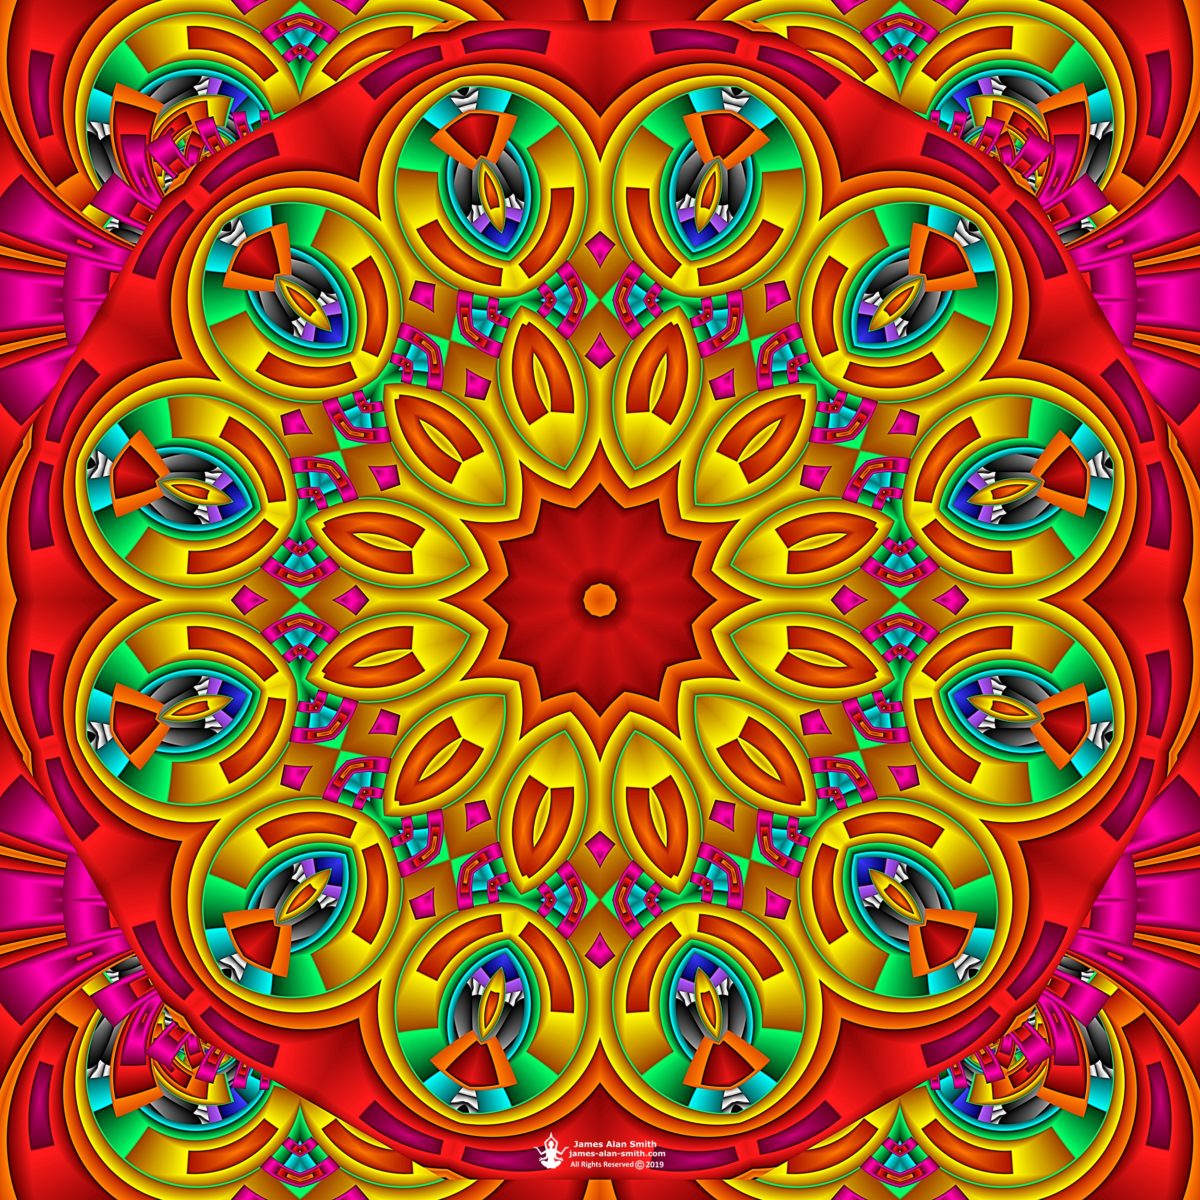 Bright Daisy Mandala: Artwork by James Alan Smith